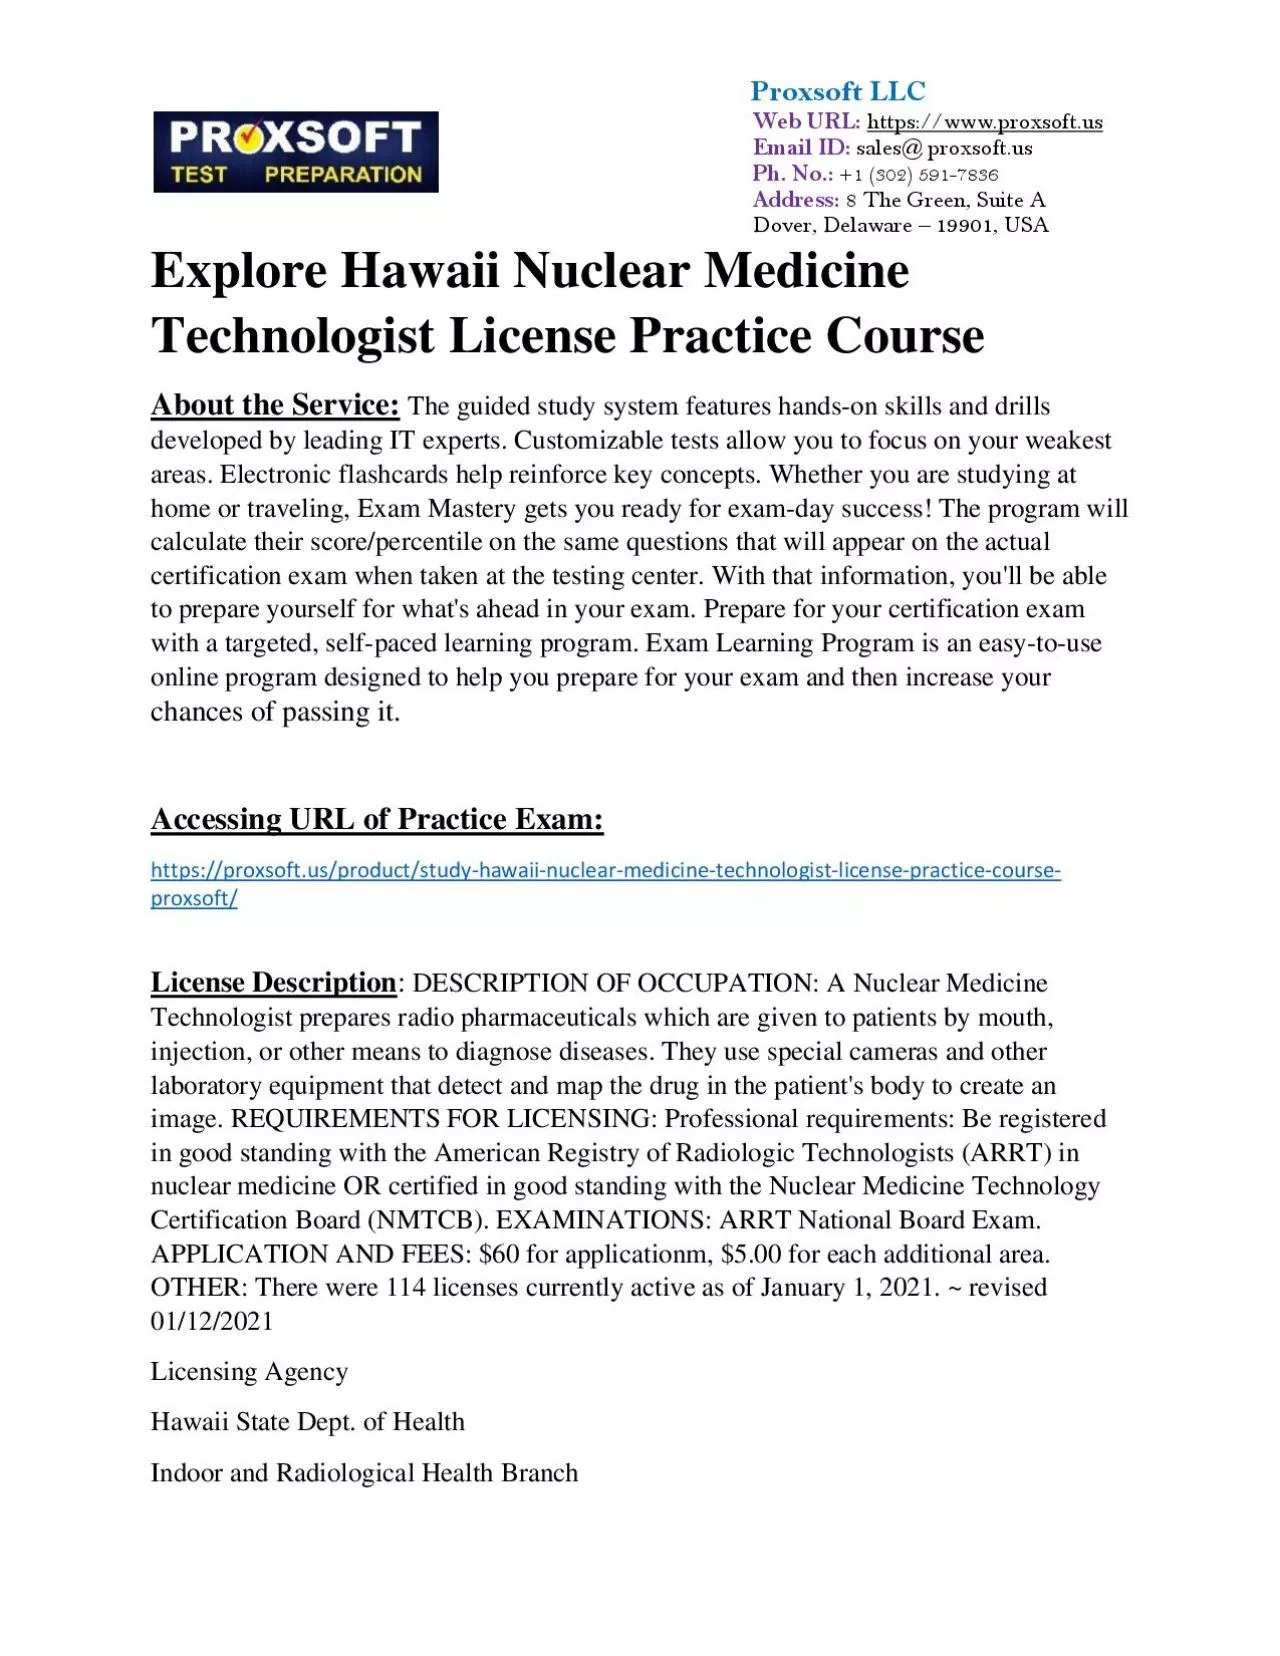 Explore Hawaii Nuclear Medicine Technologist License Practice Course